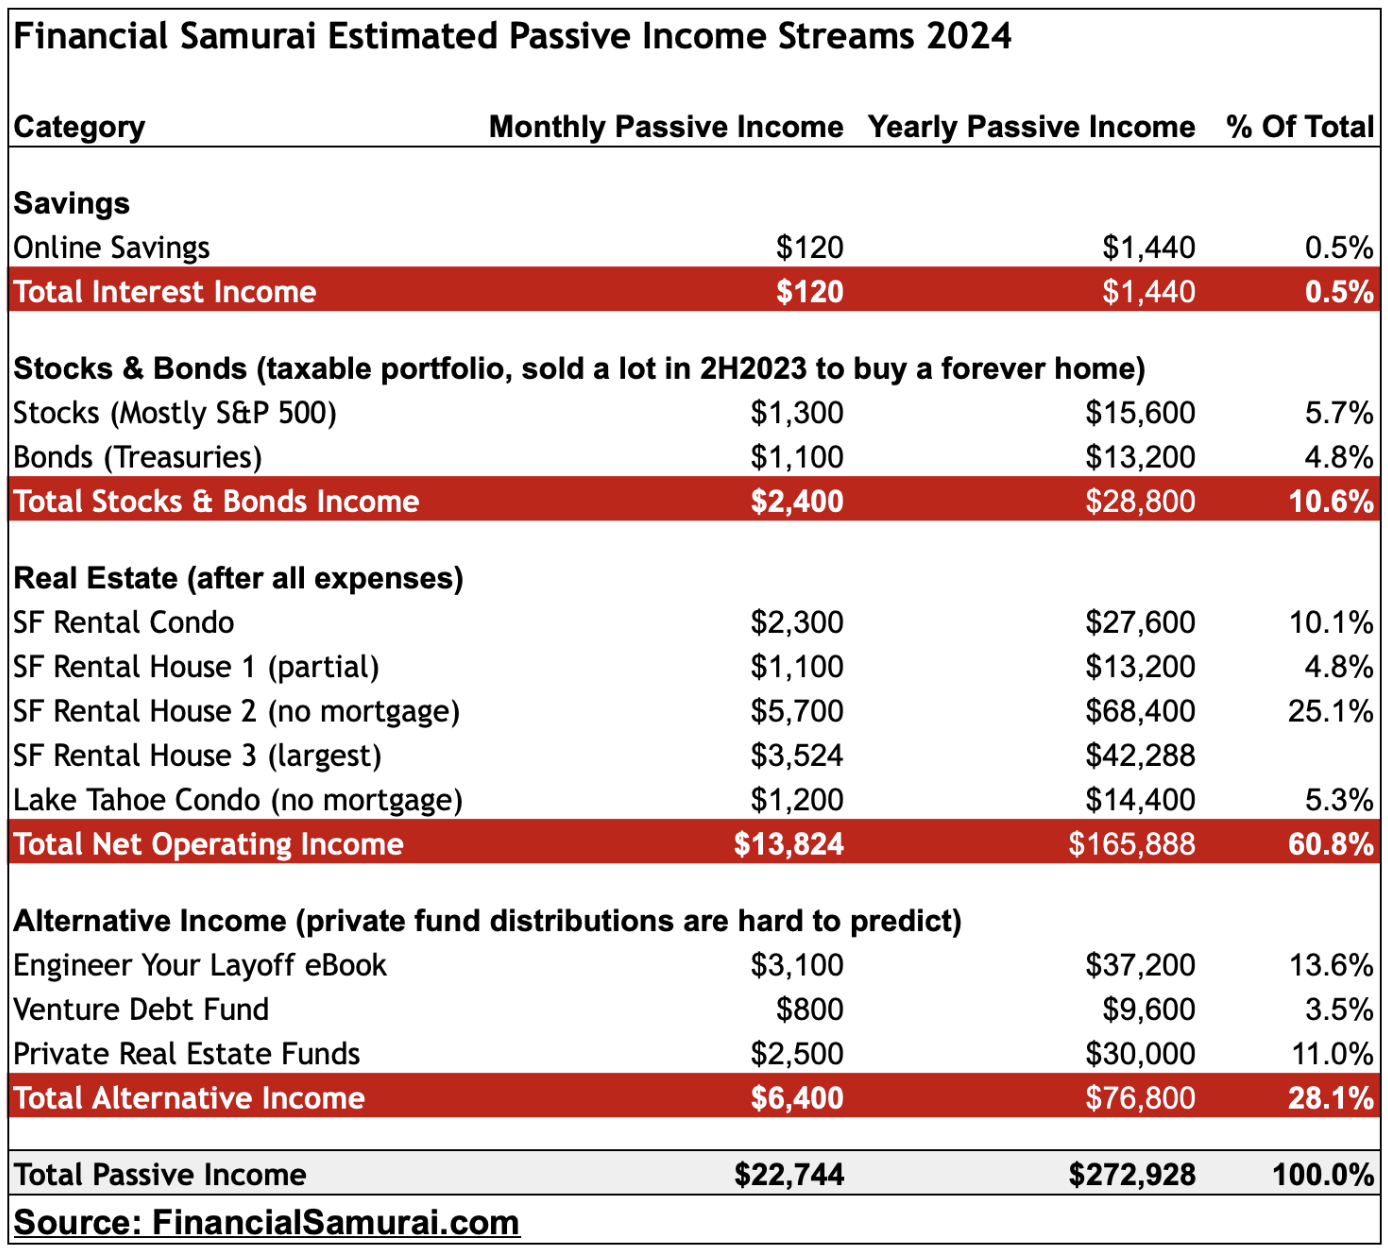 Financial Samurai 2024 estimated passive income streams